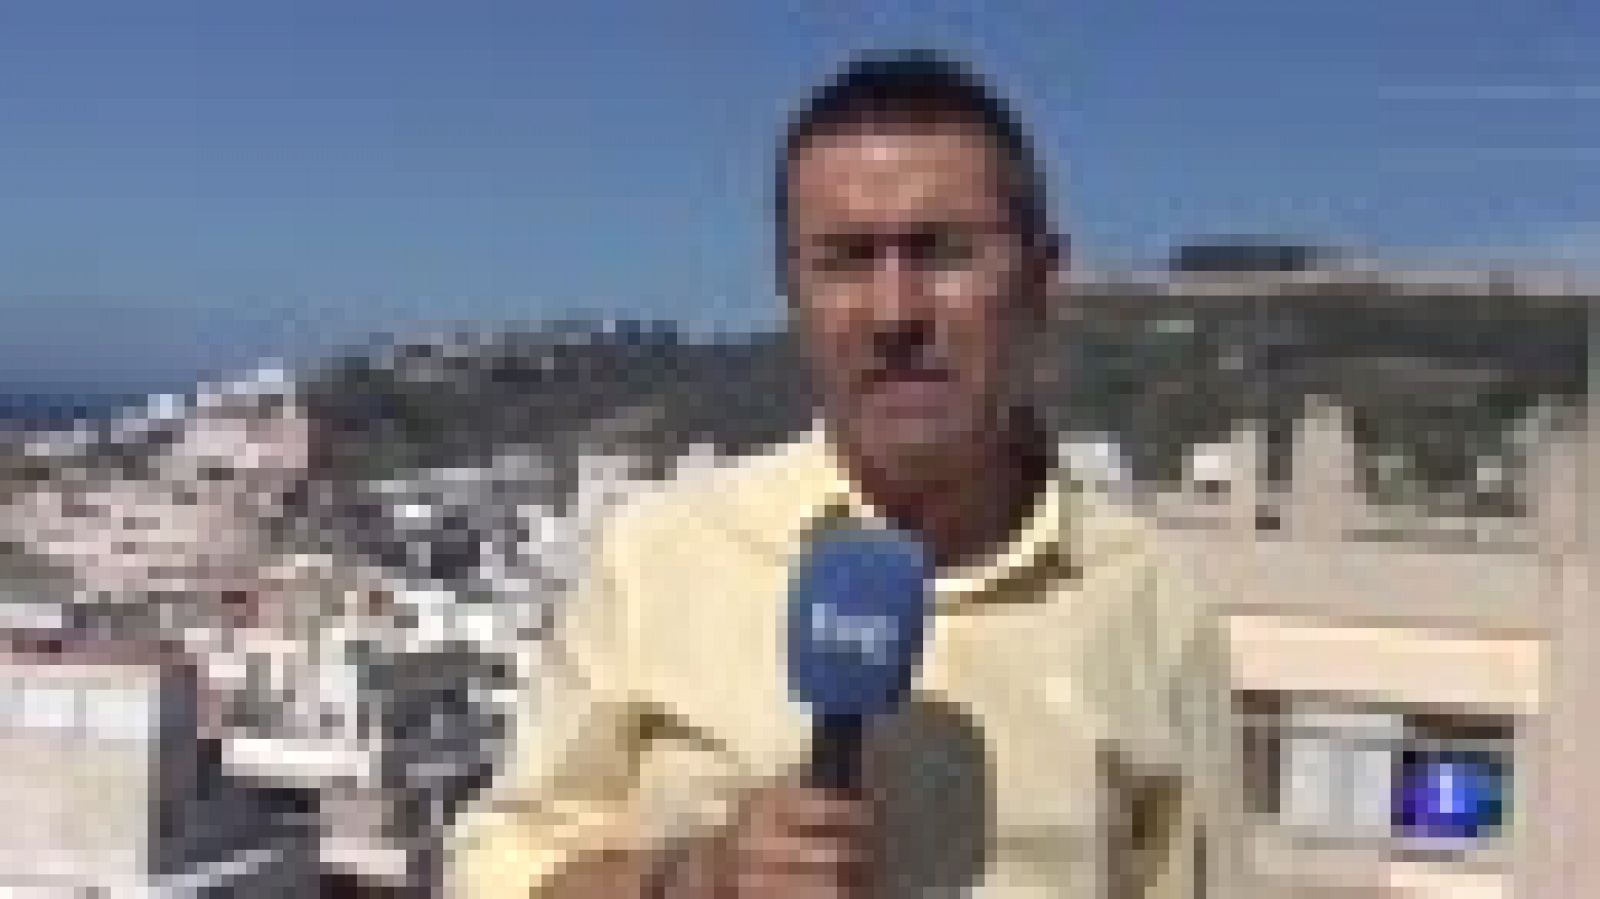 Inmigración | Ceuta: El juez envía a prisión a dos de los migrantes detenidos en Ceuta